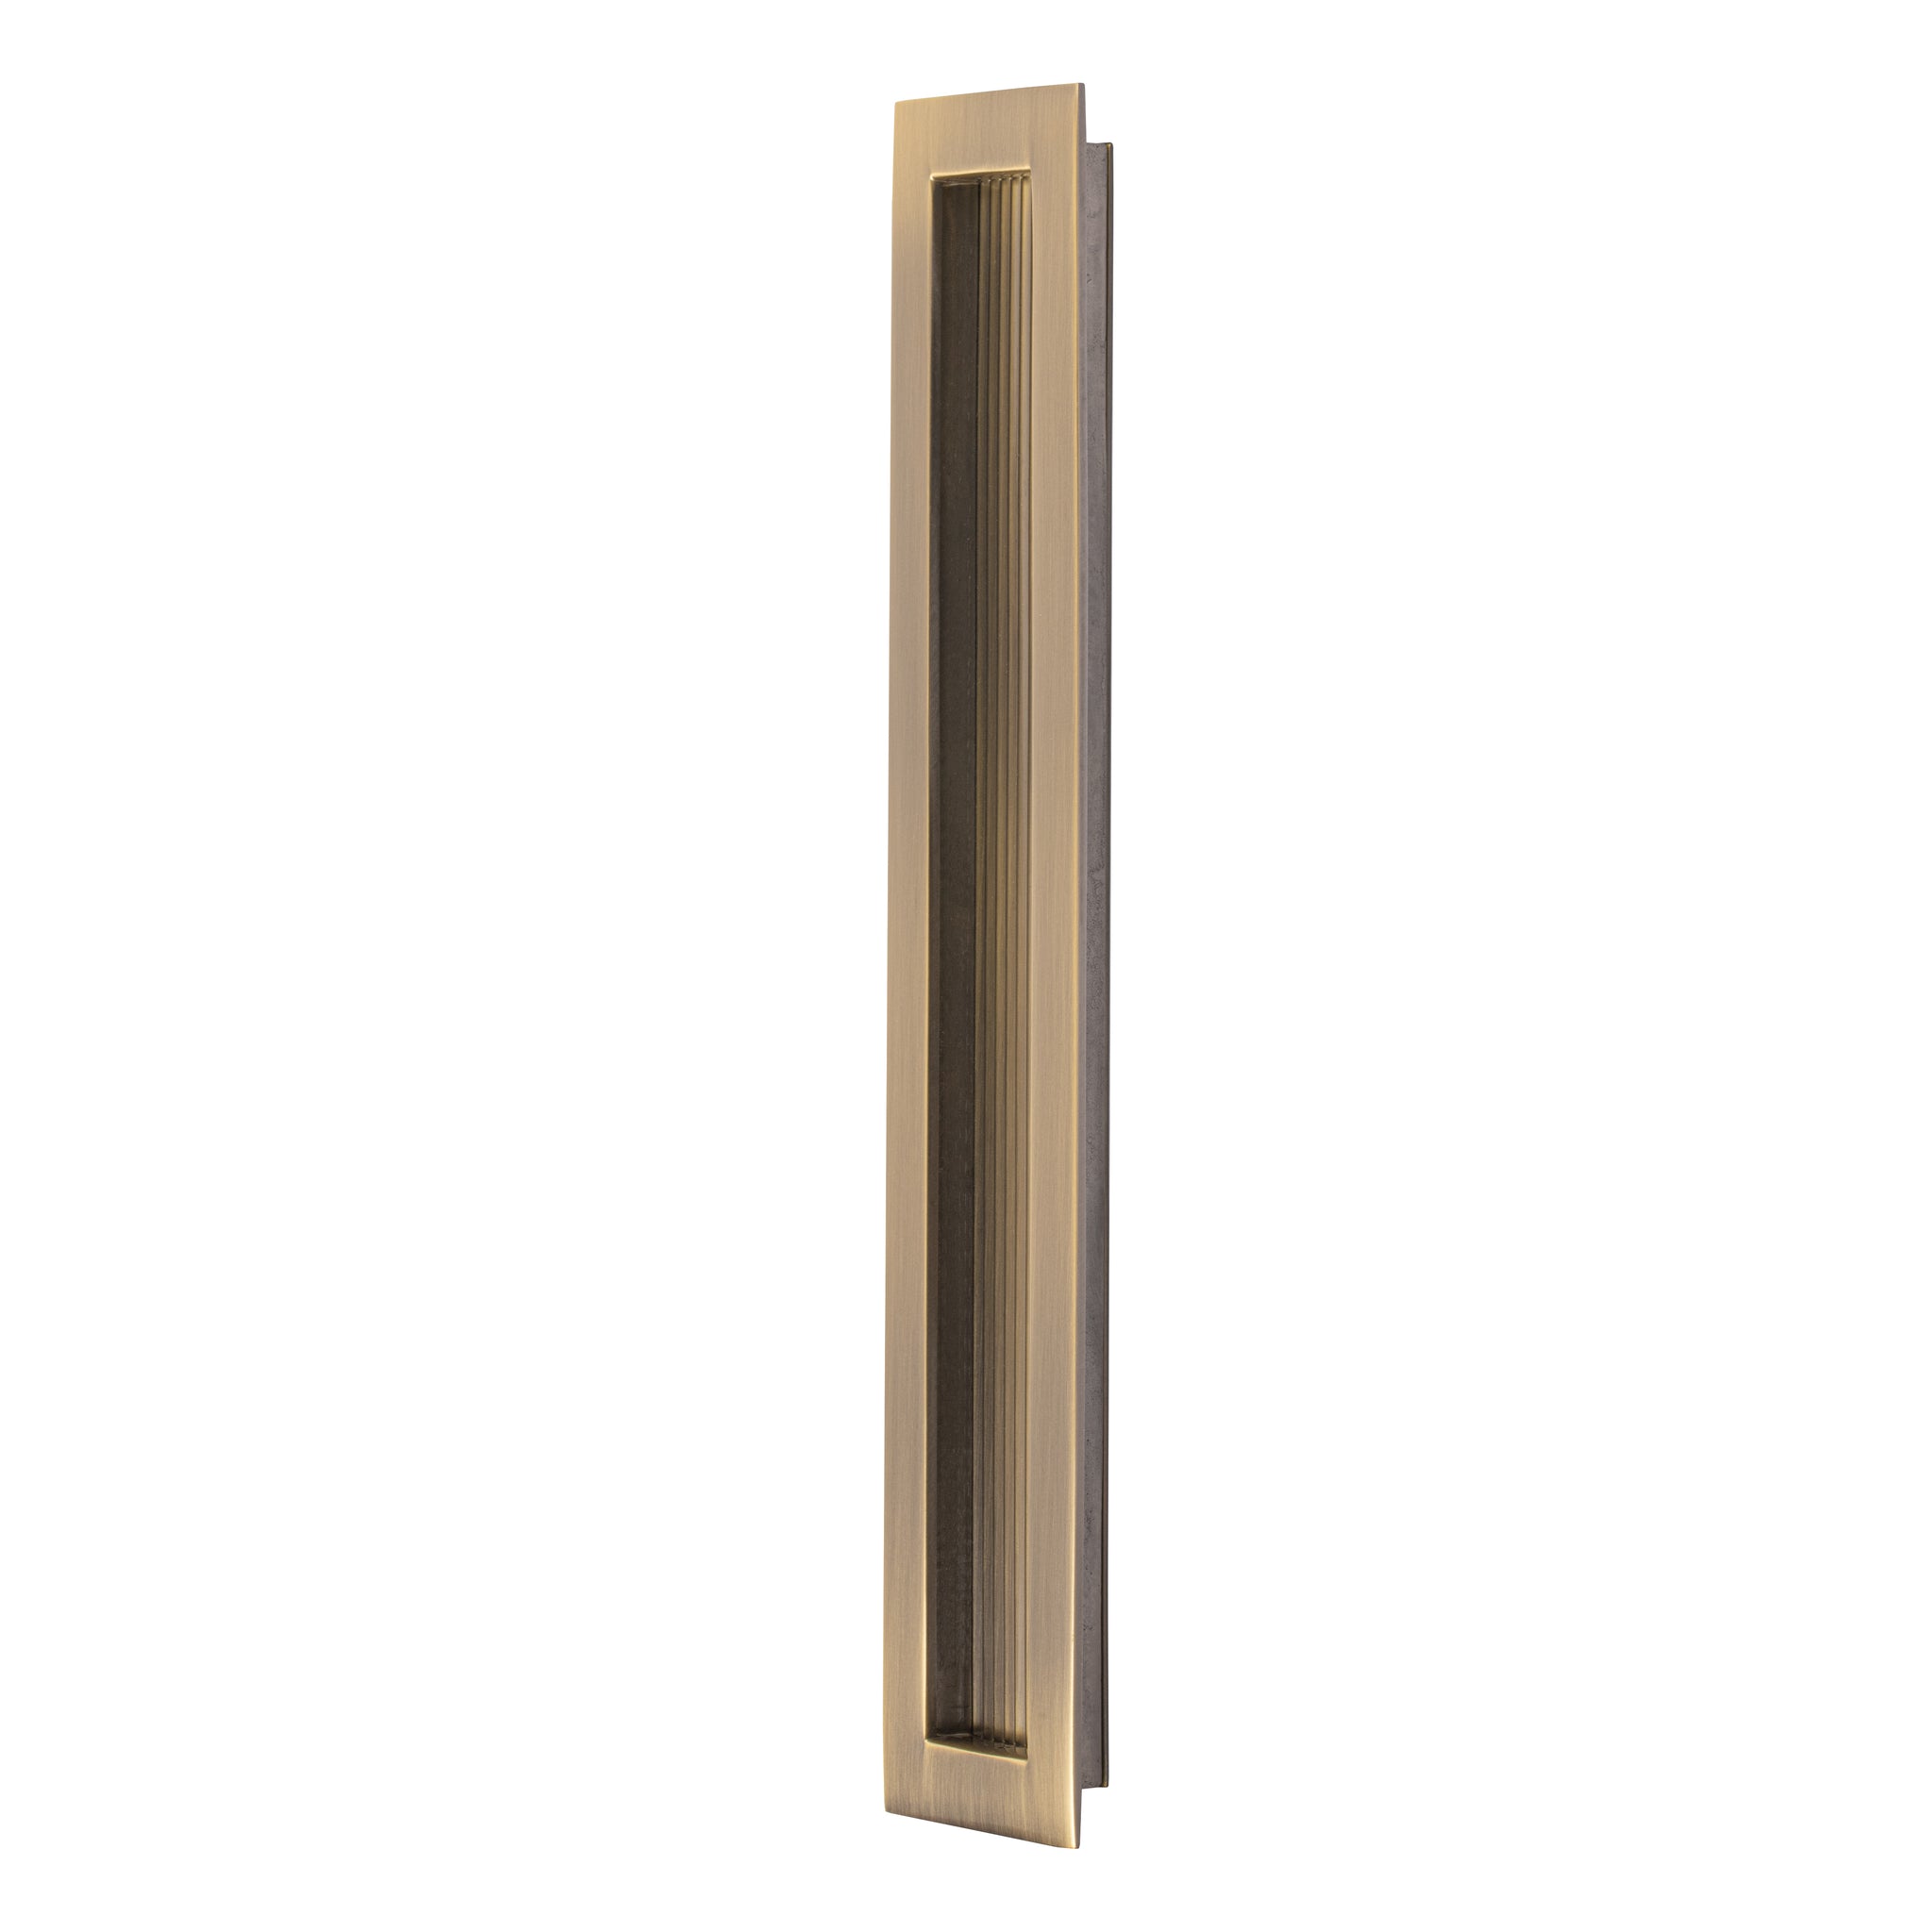 large flush pull handle for sliding doors